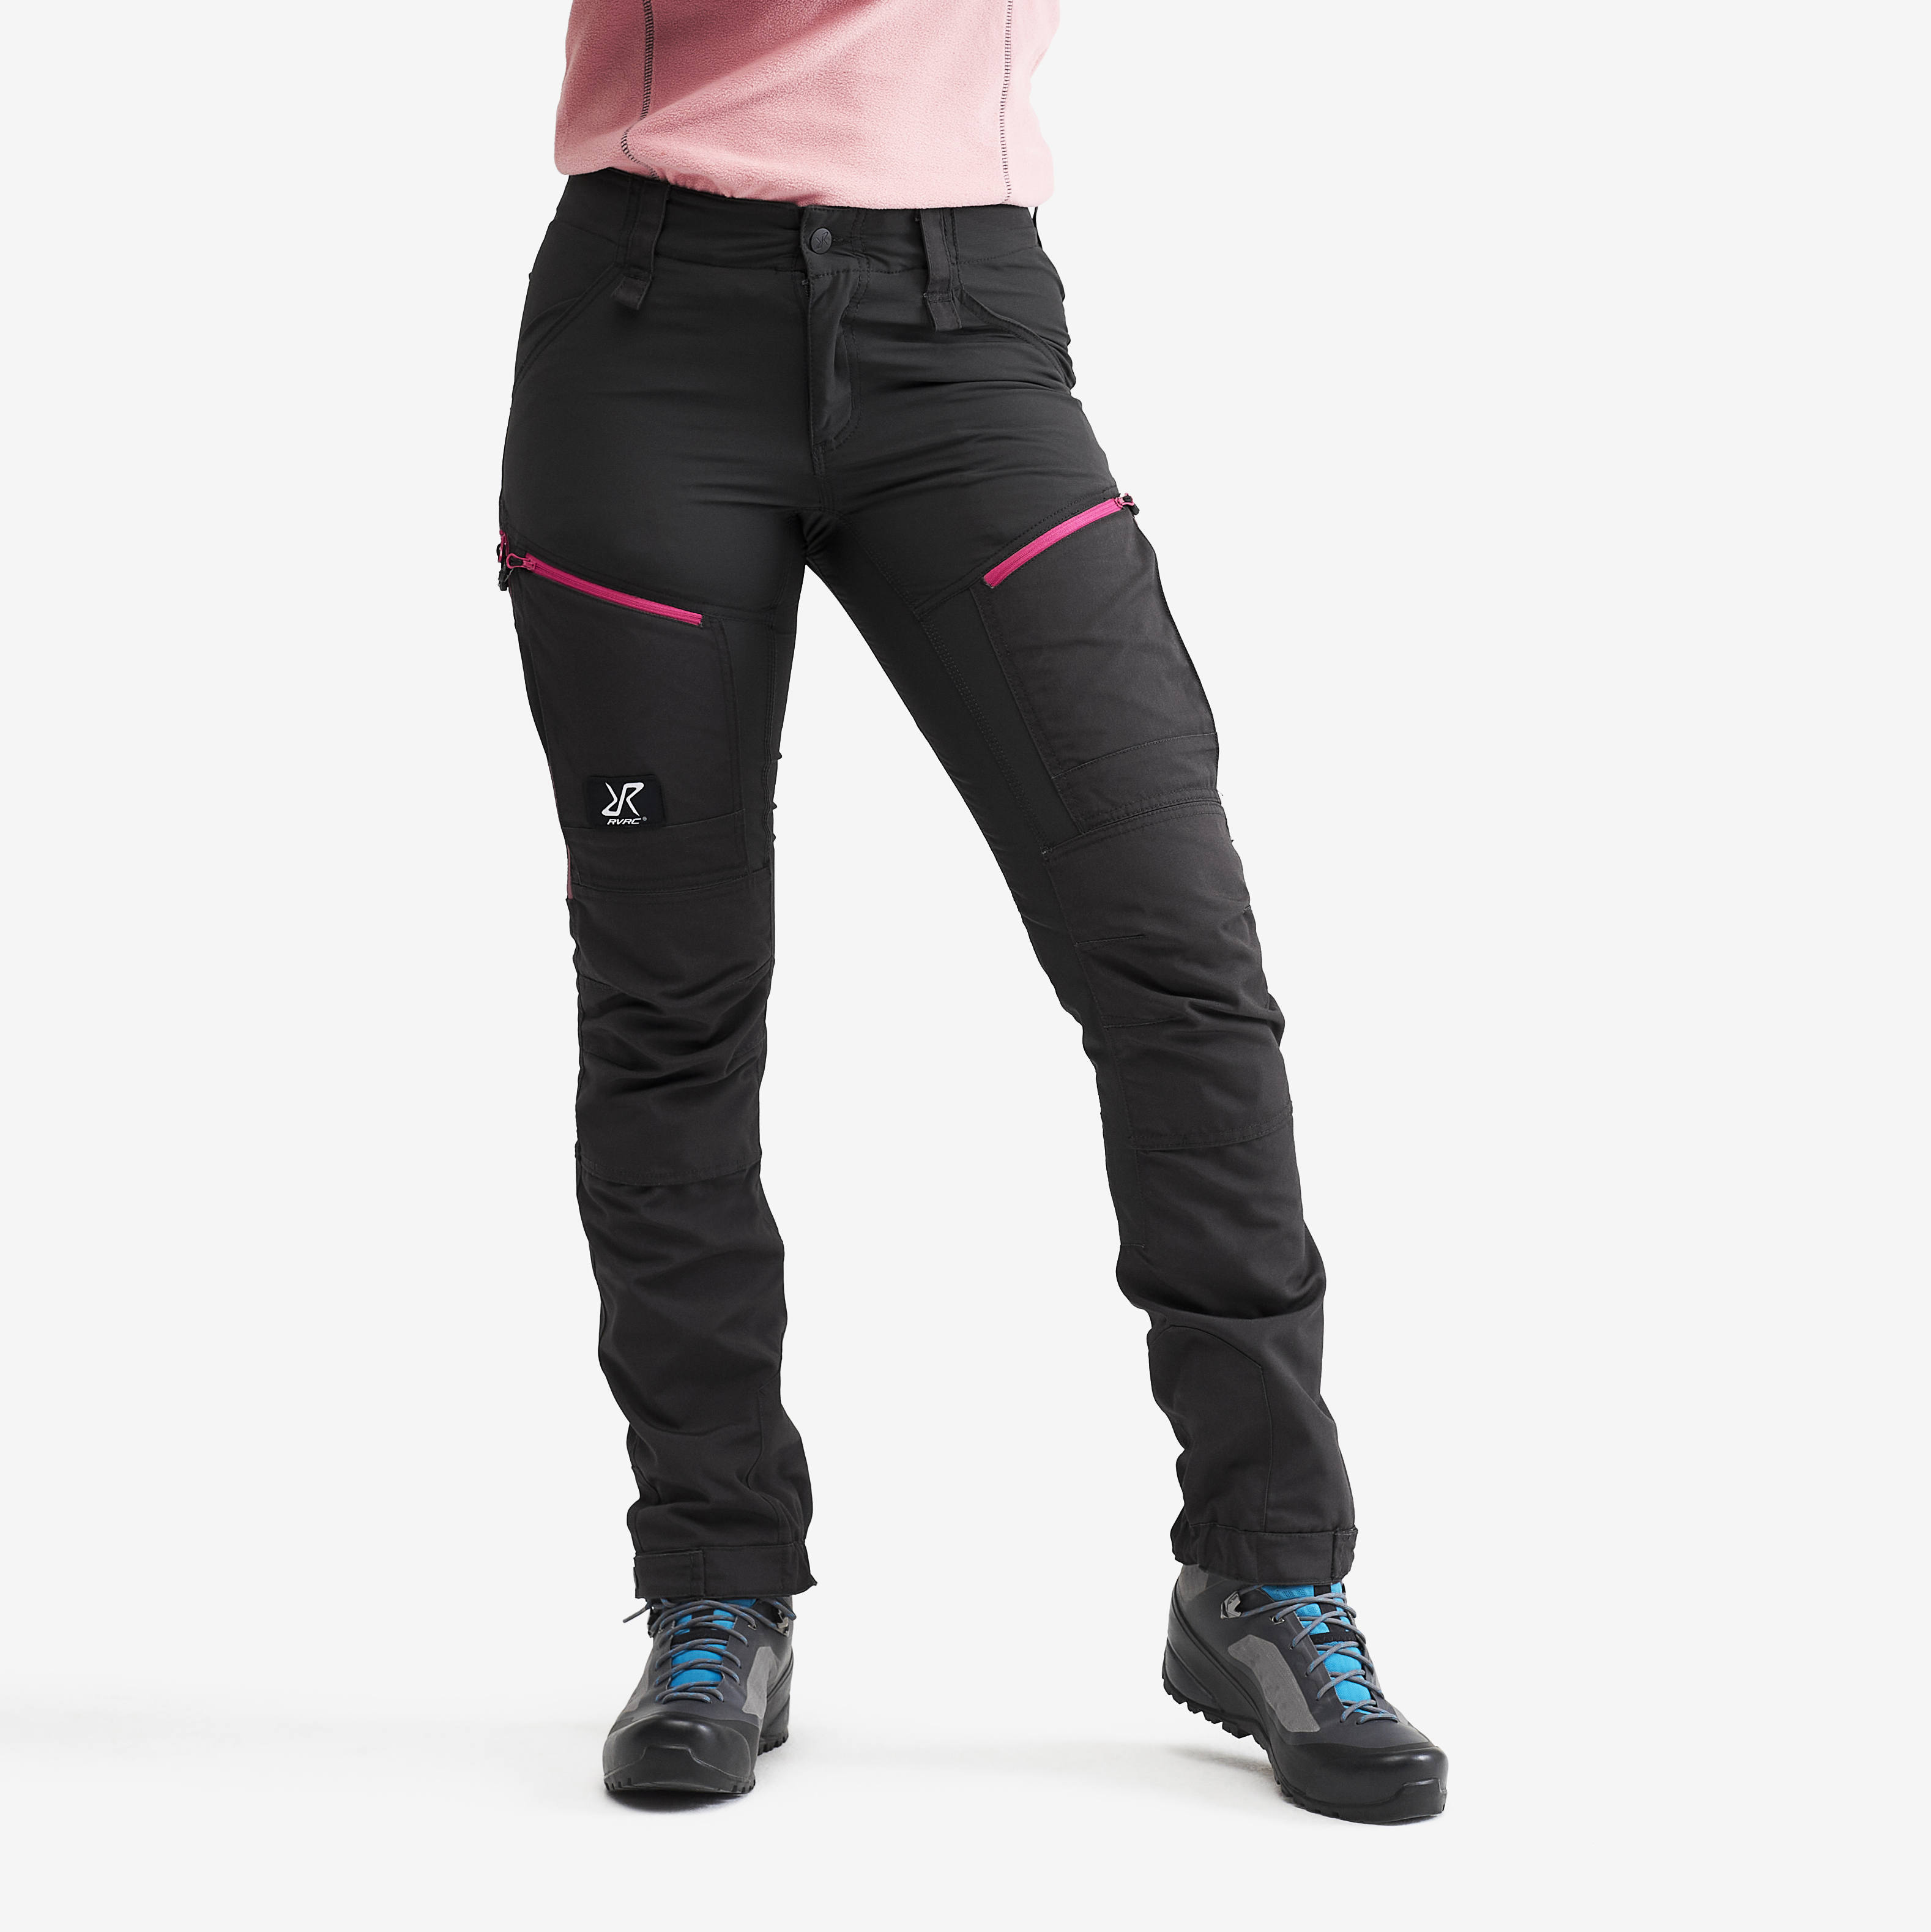 RVRC GP Pro turistické kalhoty pro ženy v tmavě šedé barvě